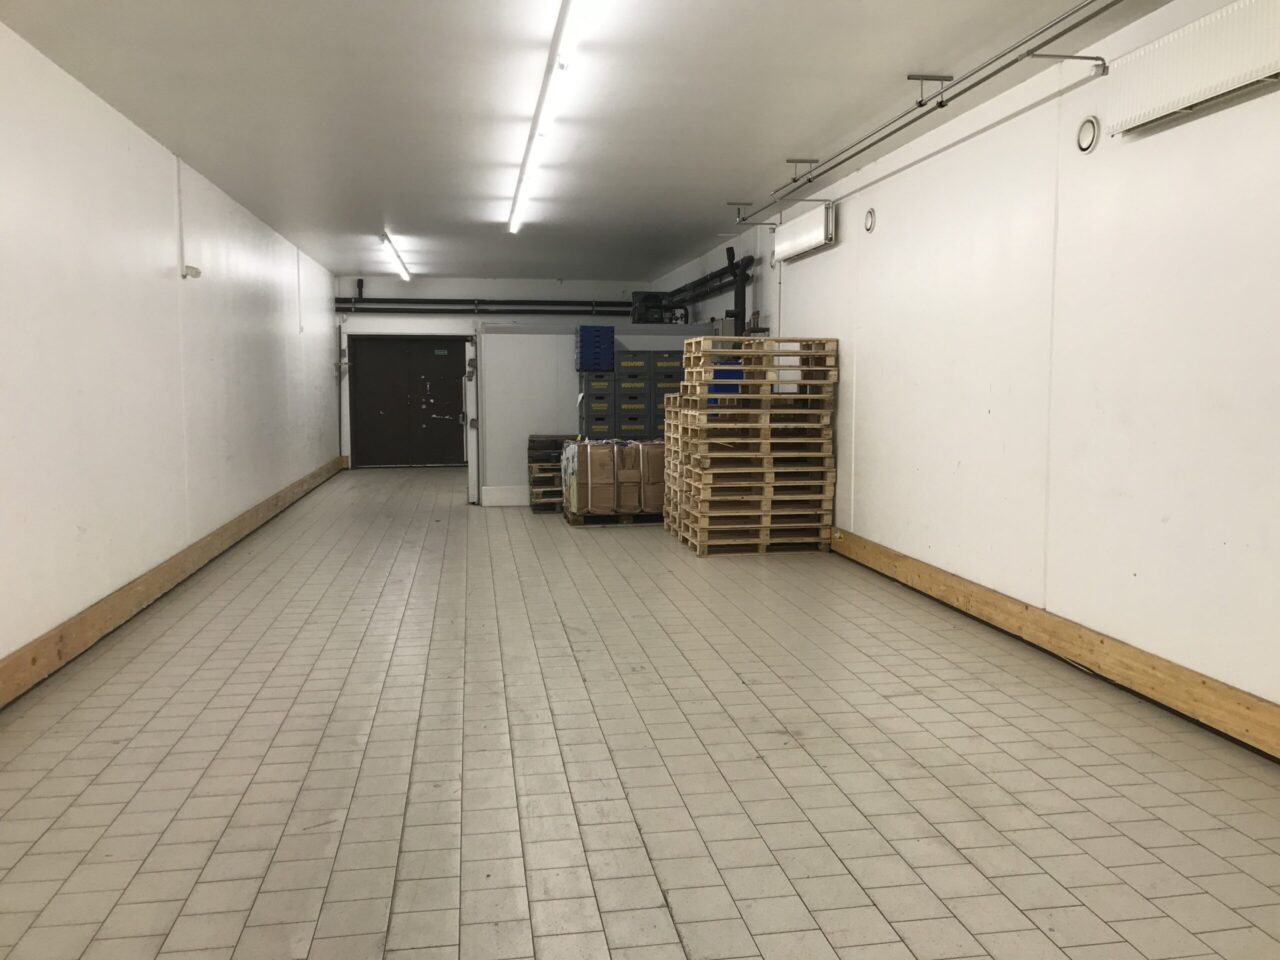 Erhvervsejendom til Leje i Toftlund - Mellem Lager med hvide vægge og lysegrå flise gulv